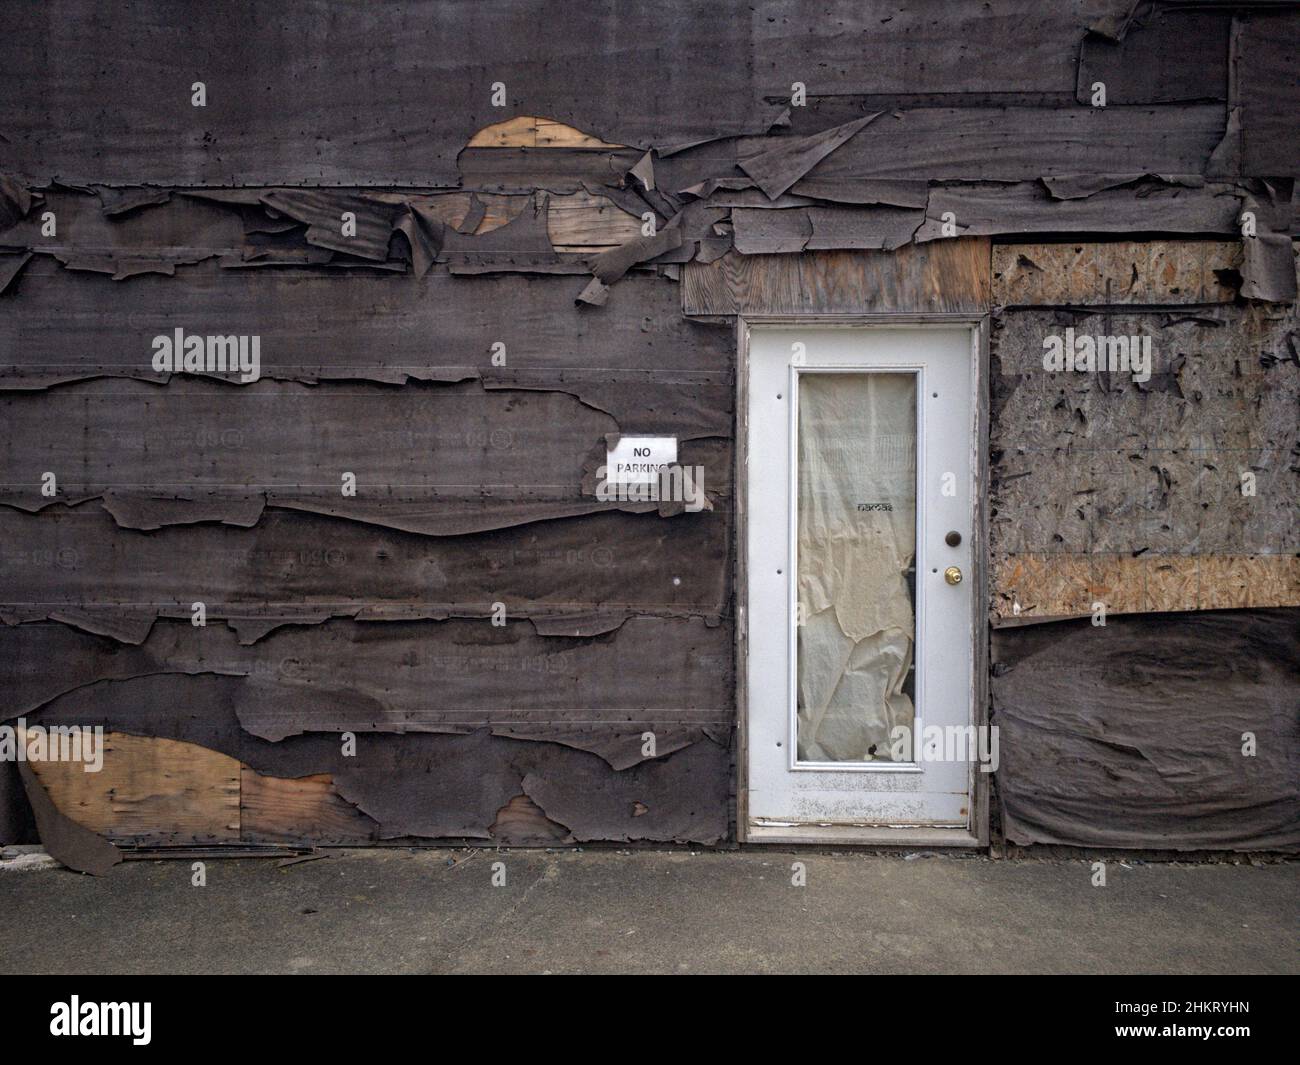 Verwittertes und abblätterndes Teerpapier oder Baupapier schält sich von der Außenwand eines alten, verlassenen Gebäudes in einer ländlichen Gemeinde weg. Stockfoto